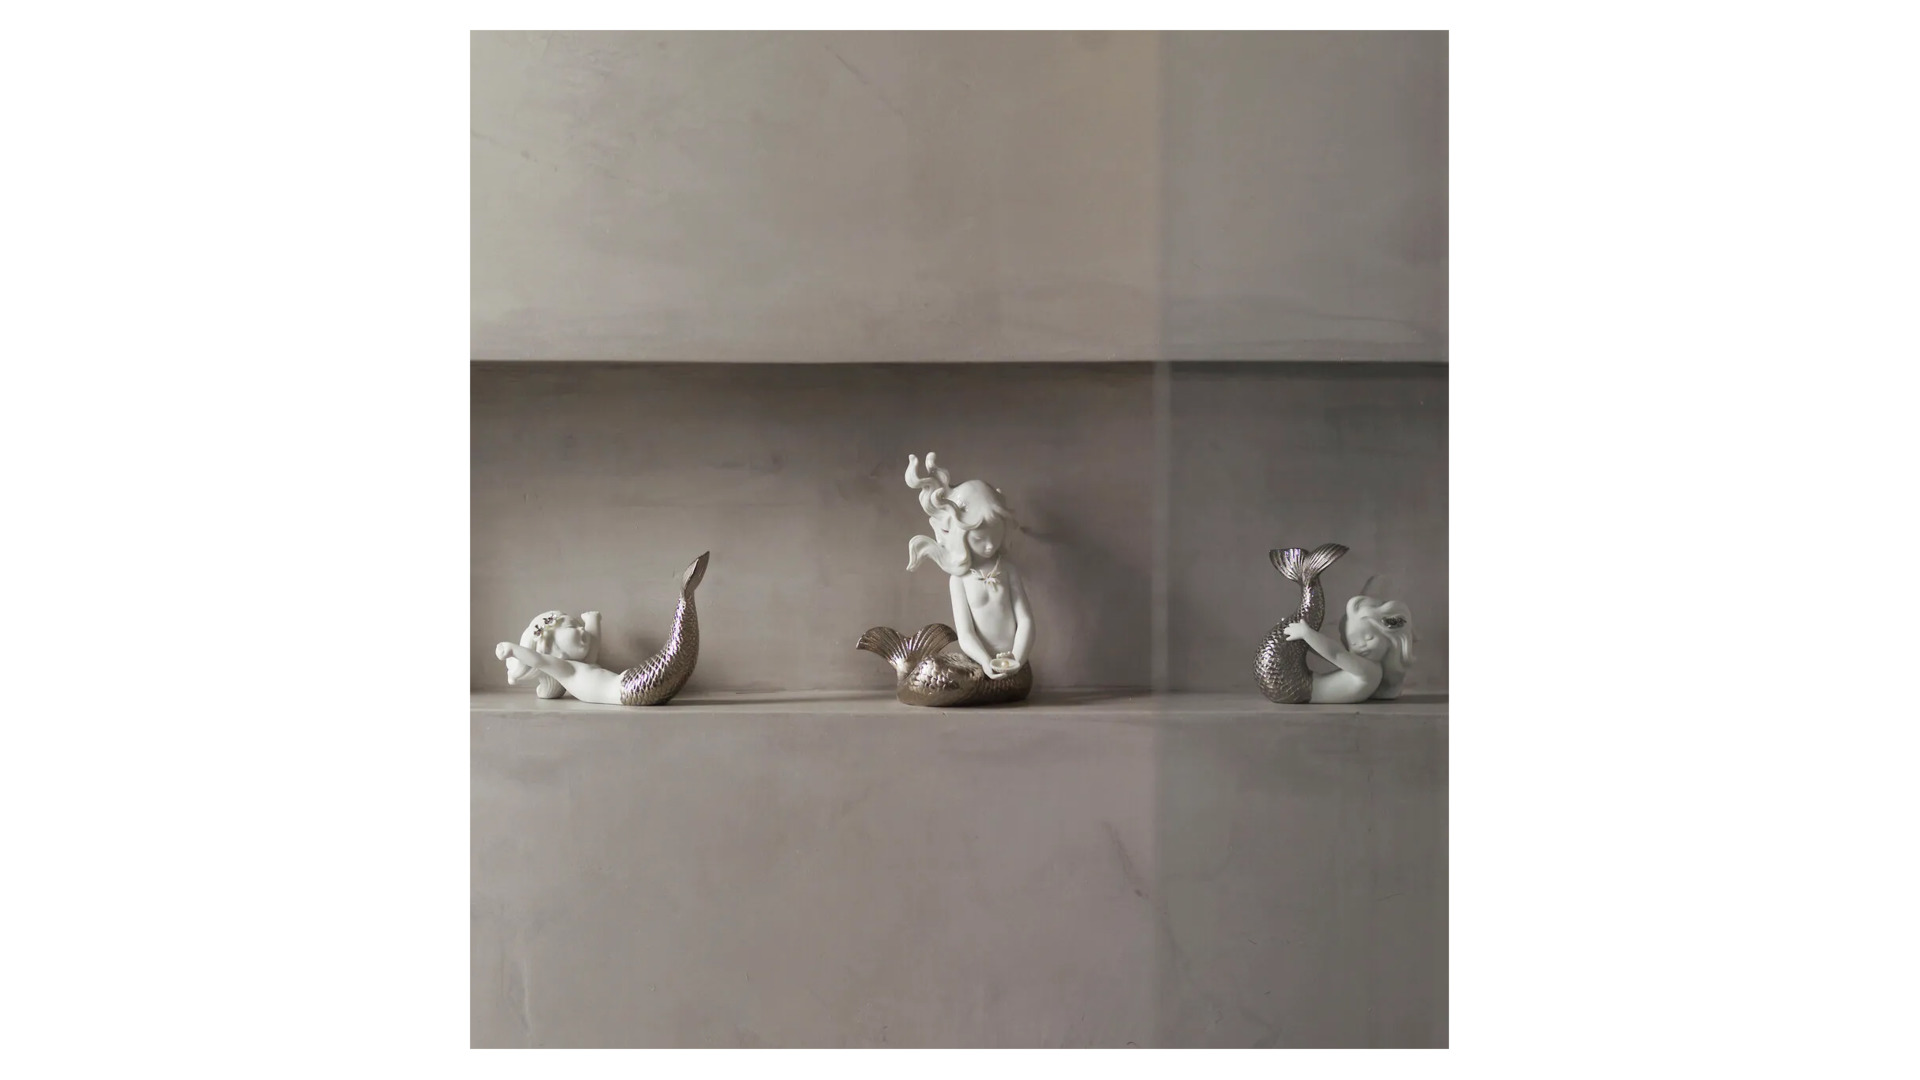 Фигурка Lladro Морская игра Ре-Деко 12х10 см, фарфор, серебряный люстр